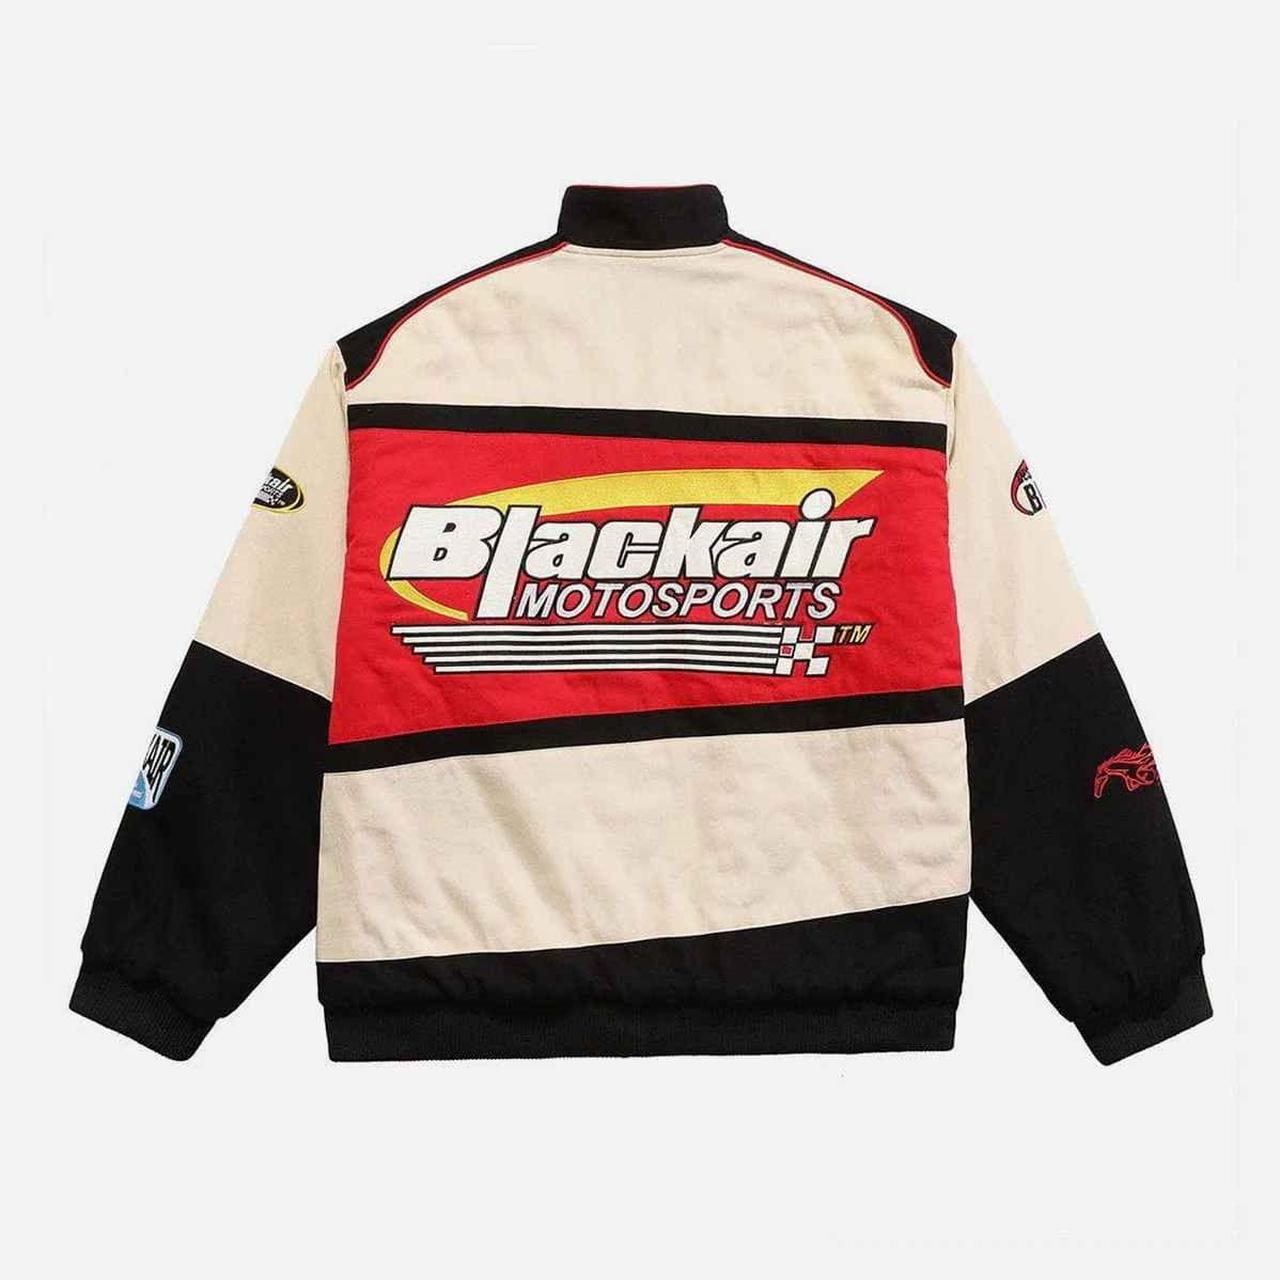 Blackair Motorsports Patches Racing Jacket 🎨 In... - Depop